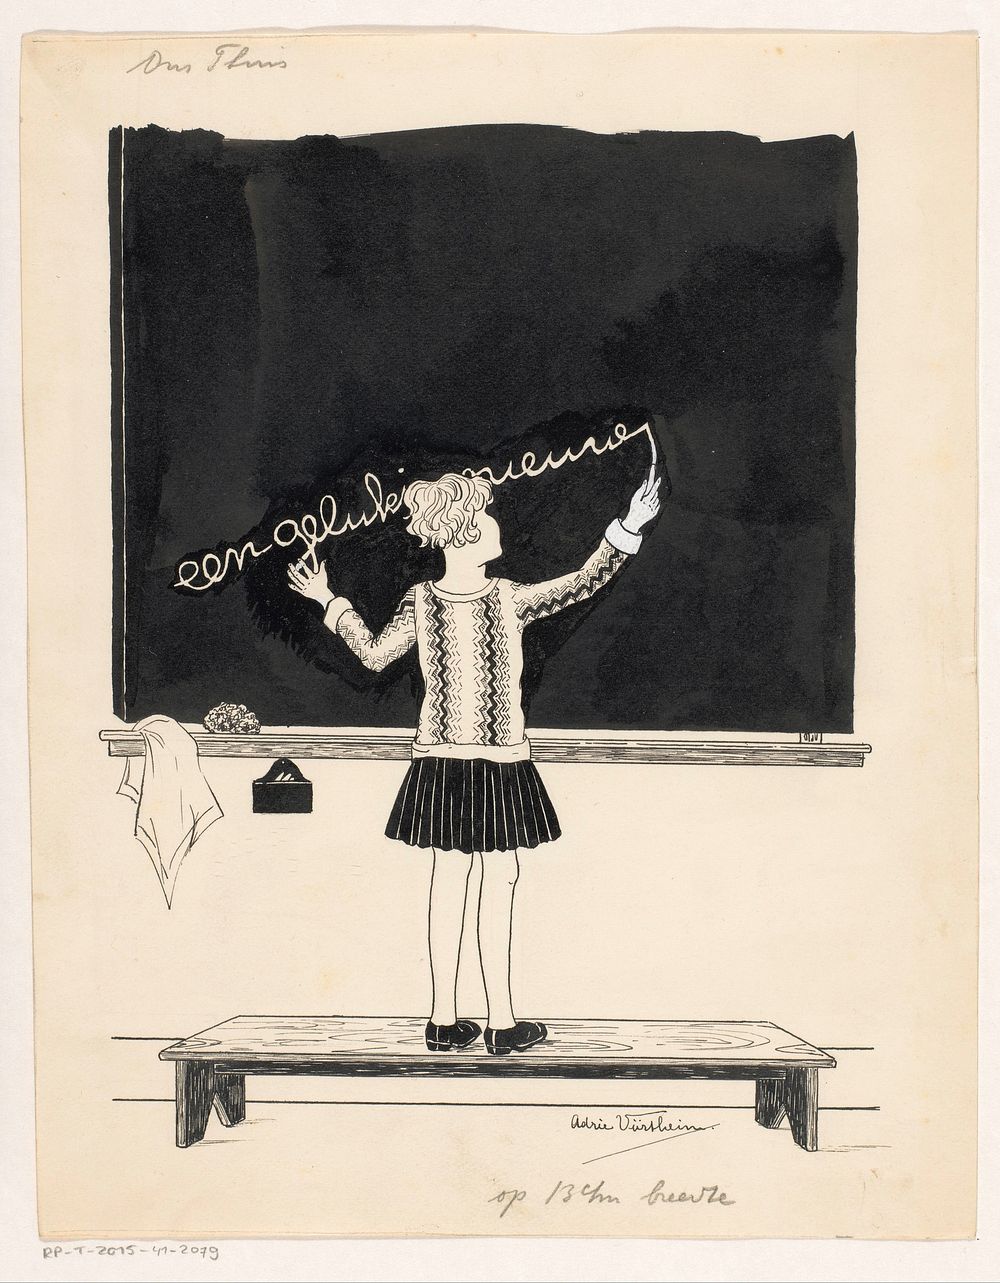 Meisje schrijft nieuwjaarswens op schoolbord (c. 1925 - c. 1935) by Adrie Vürtheim